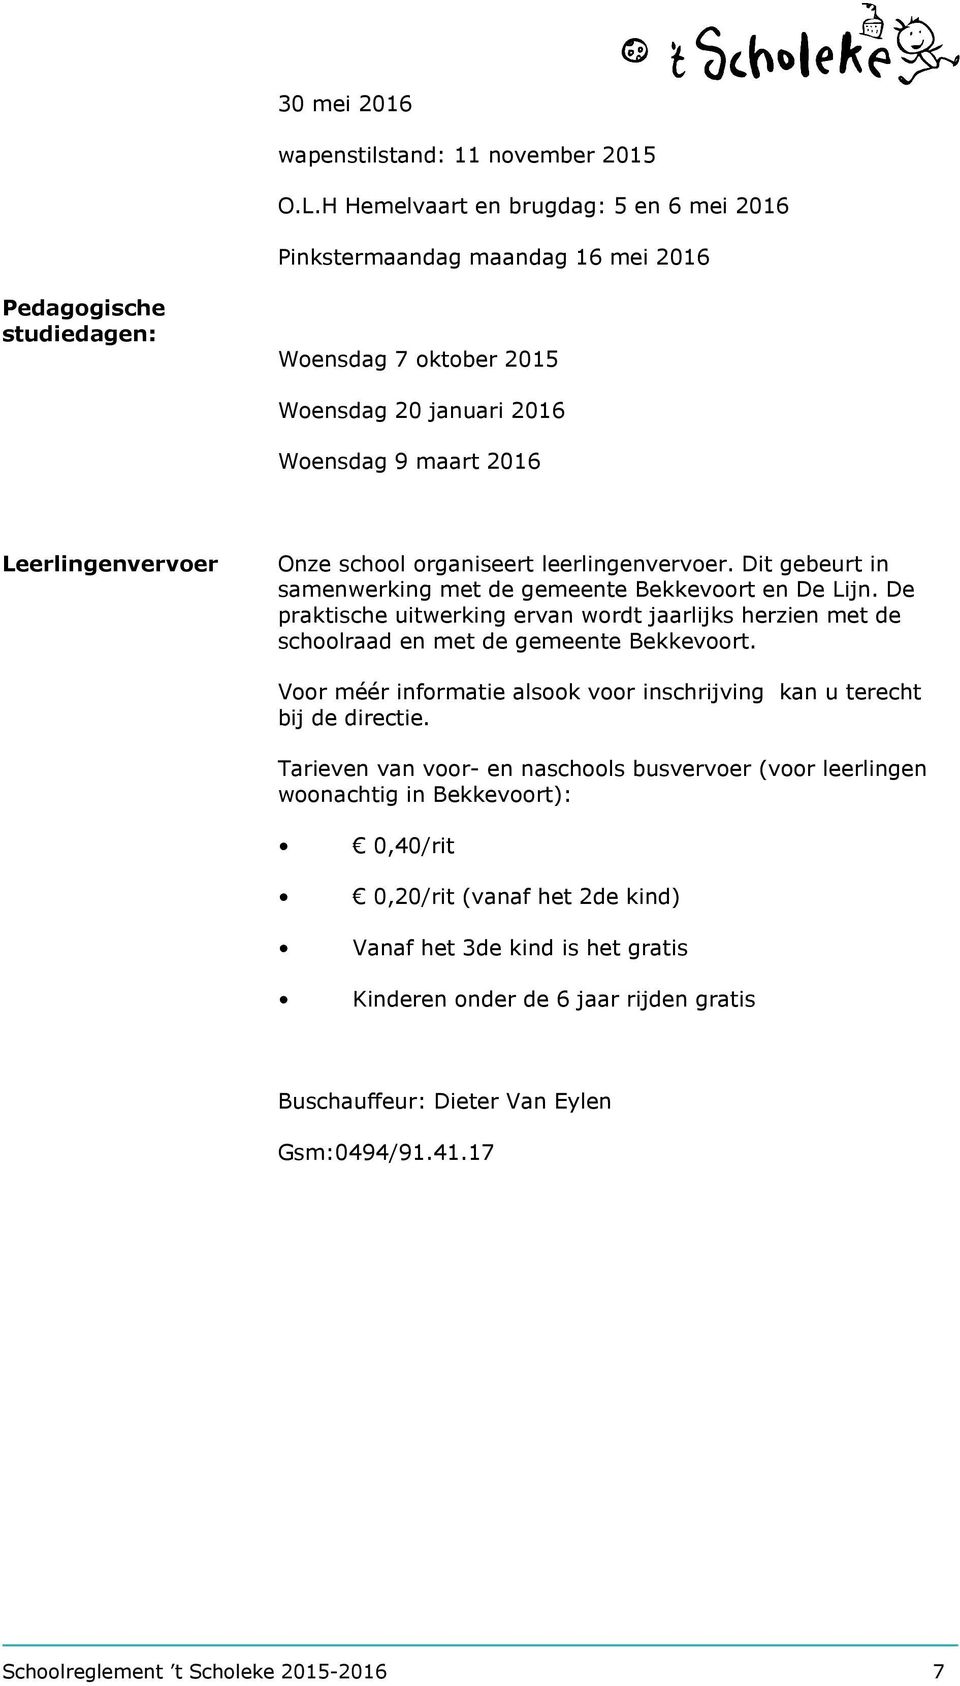 school organiseert leerlingenvervoer. Dit gebeurt in samenwerking met de gemeente Bekkevoort en De Lijn.